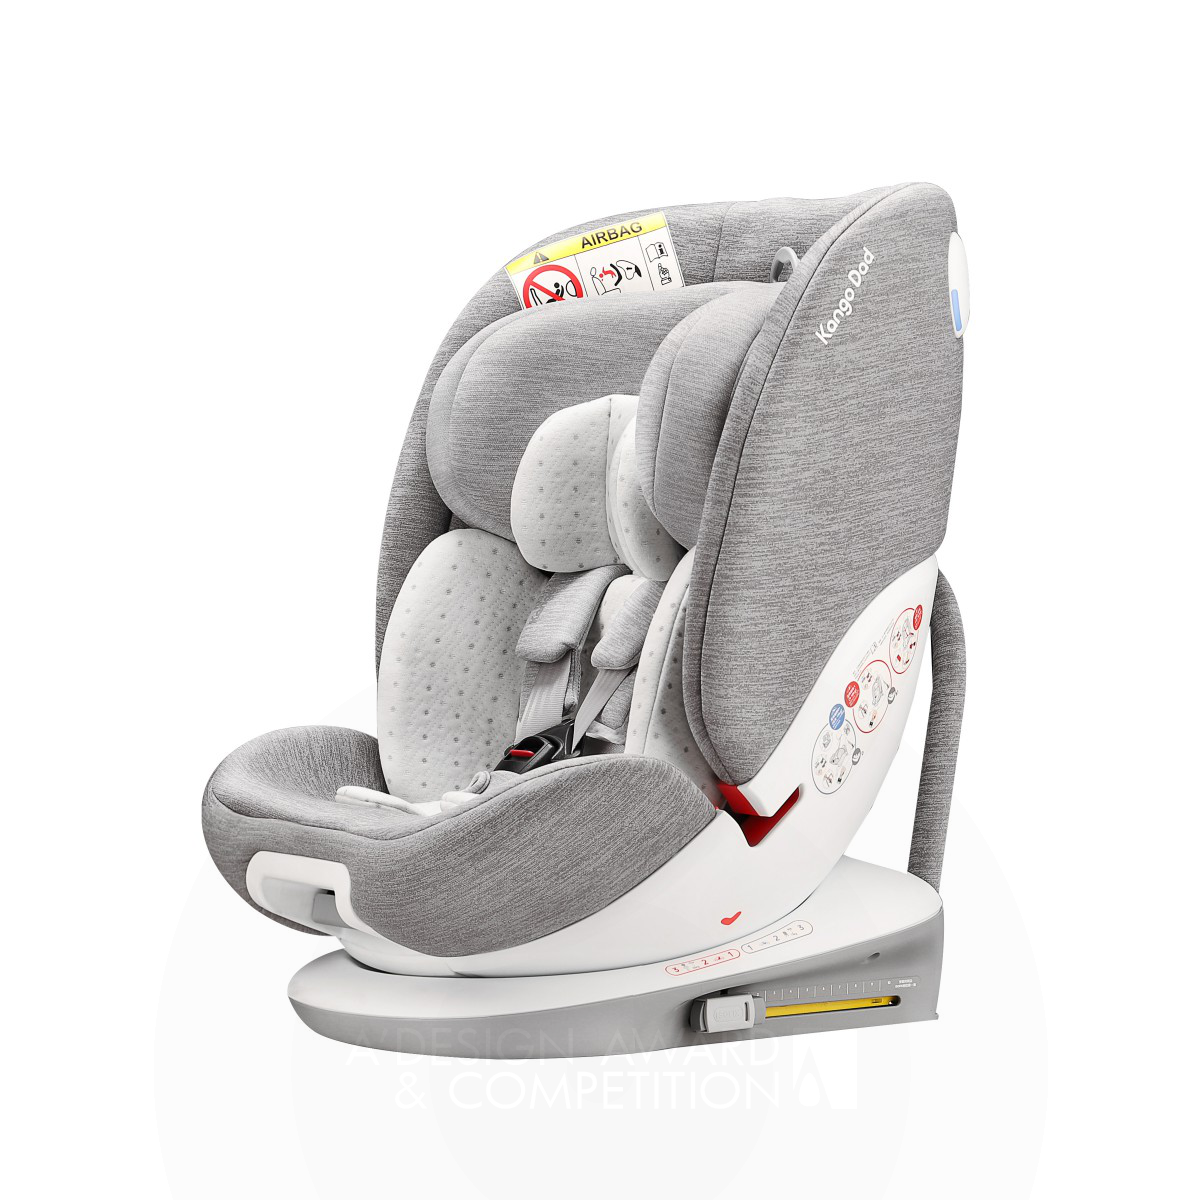 Kango Dad Funtrip V141: Der perfekte Autositz für Kinder jeden Alters